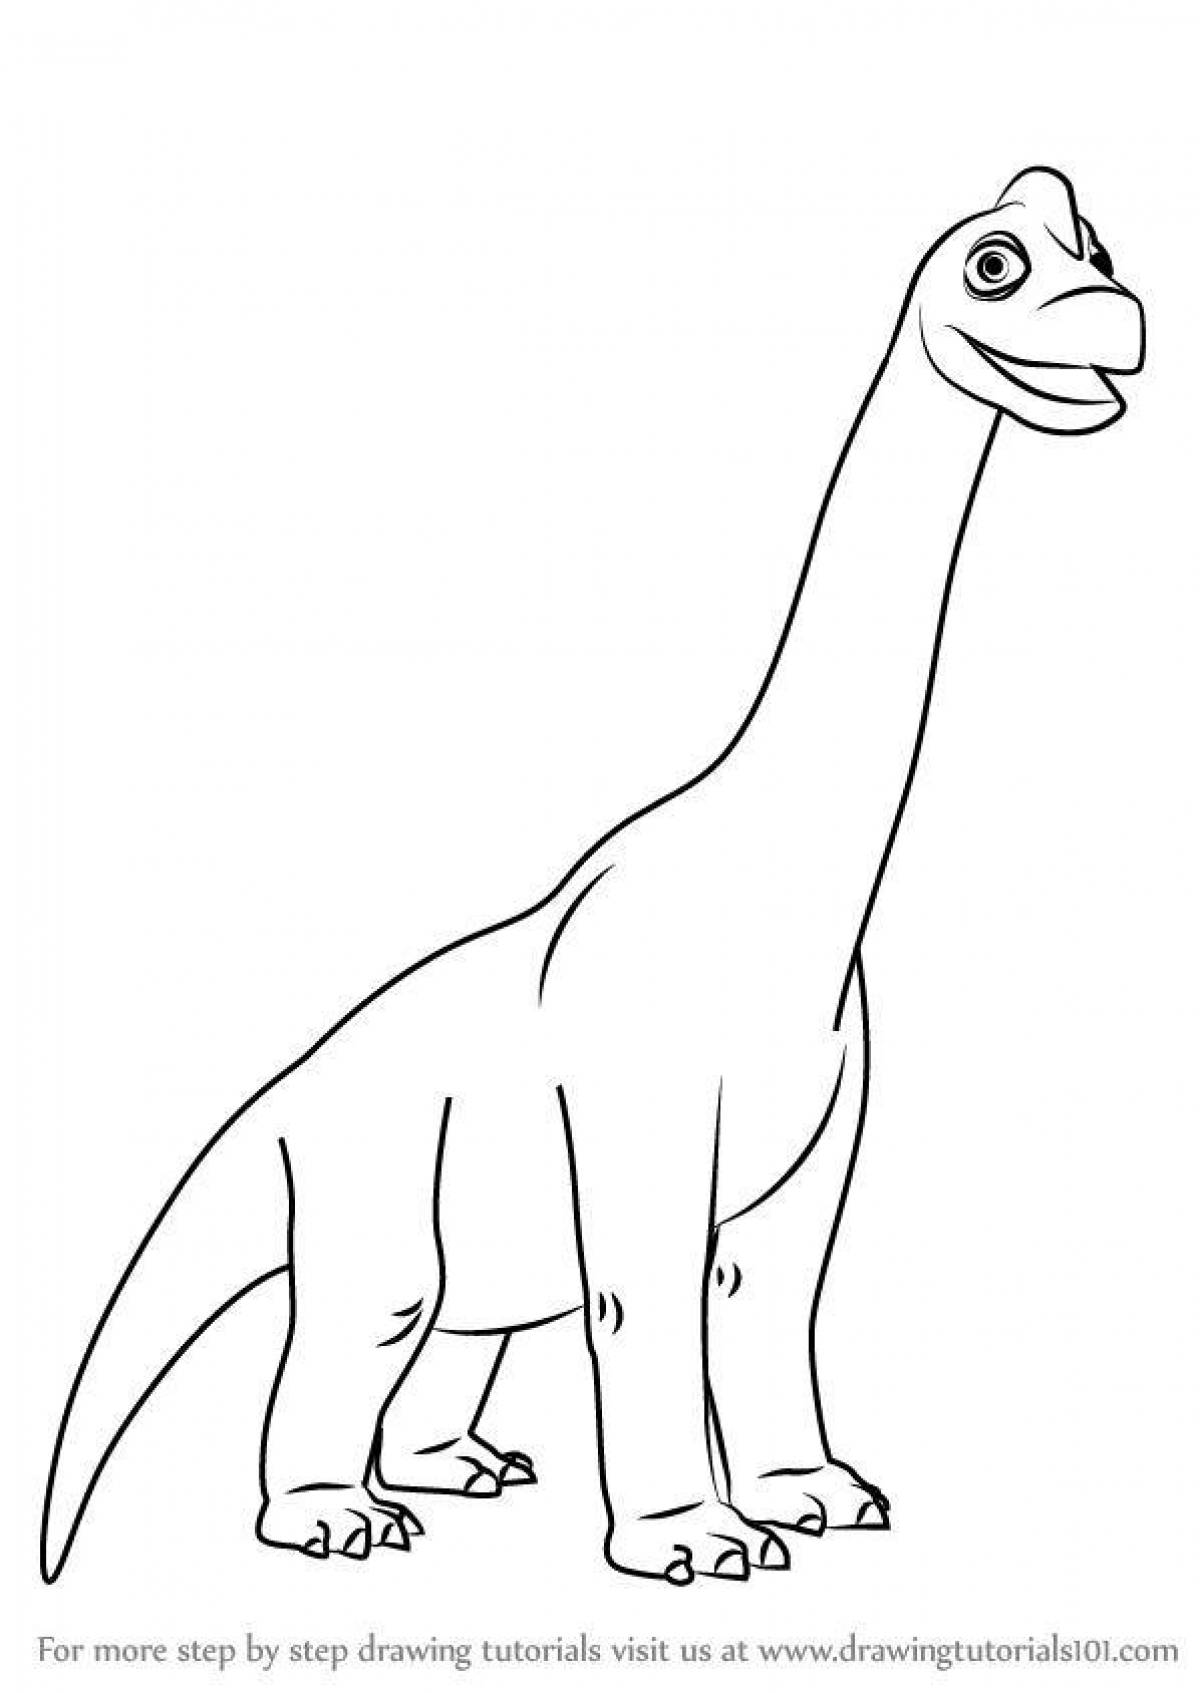 Брахиозавр рисунок для детей